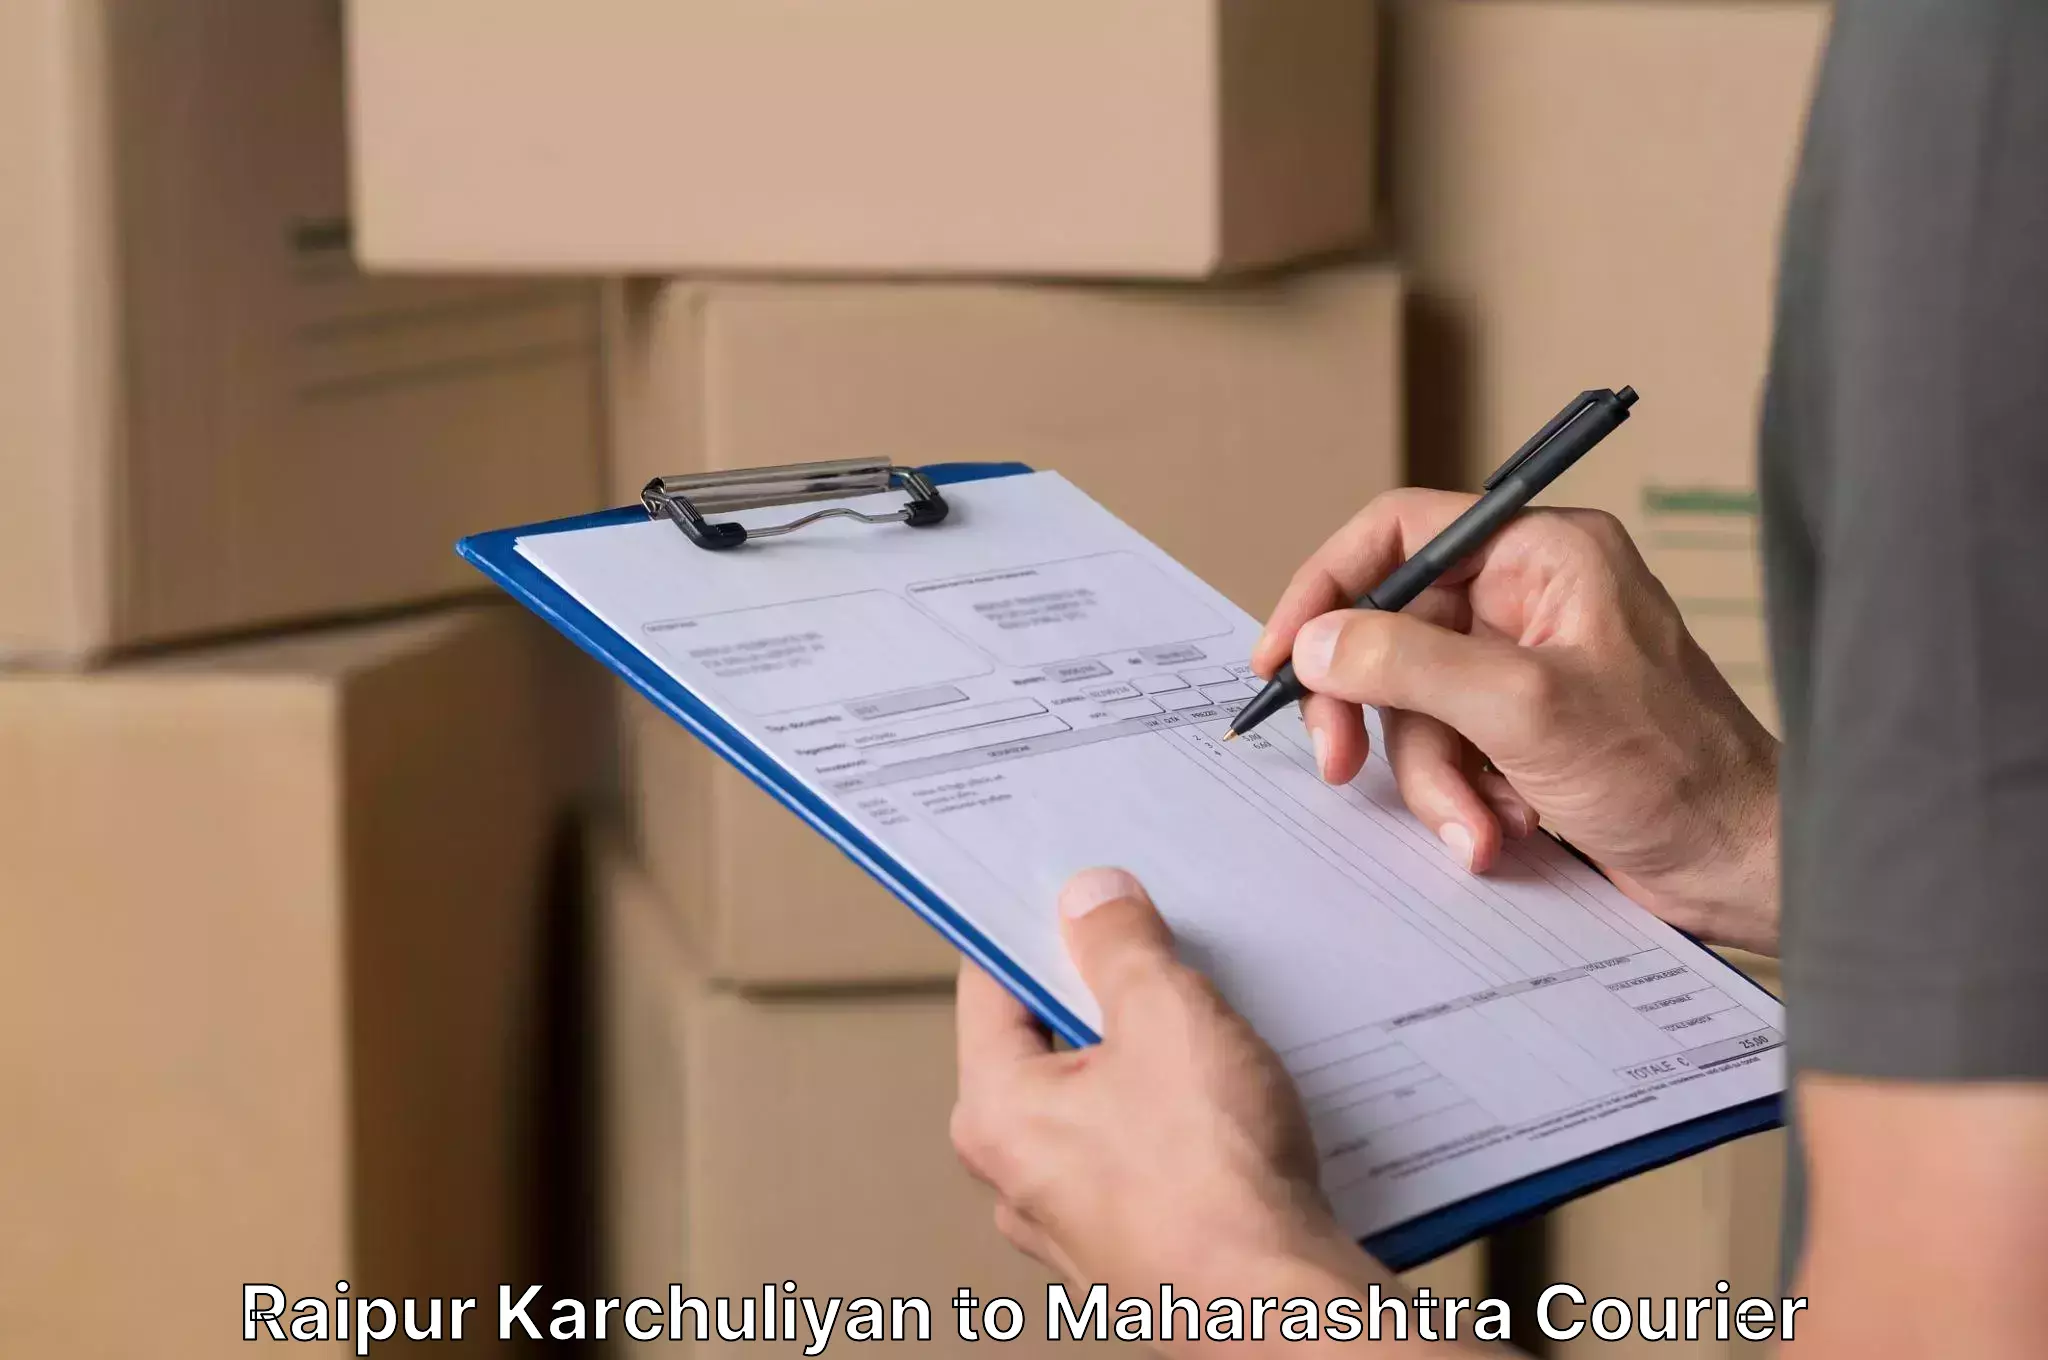 Furniture relocation experts Raipur Karchuliyan to Akot